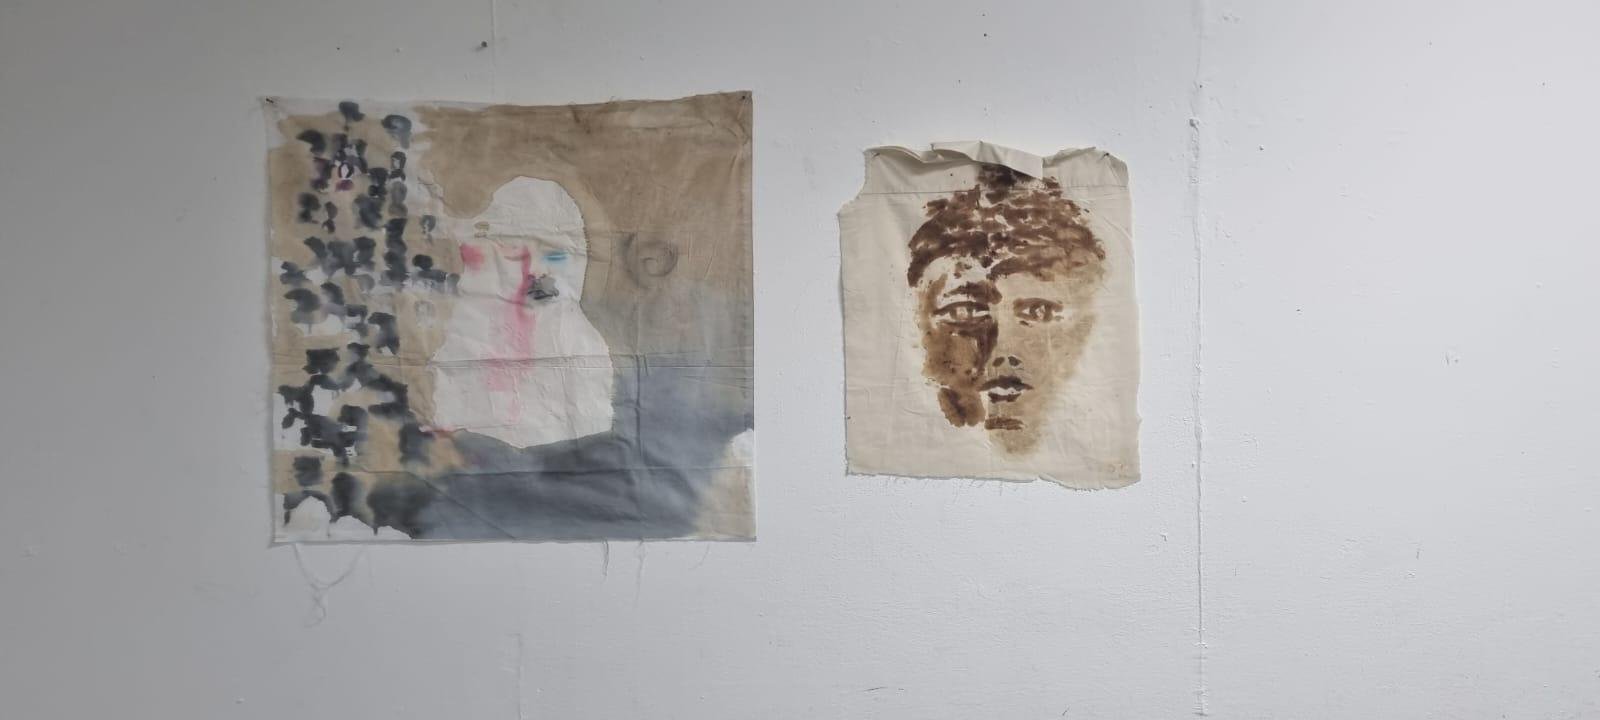 افتتاح معرض فنّي إبداعي خارج عن المألوف في مدينة النّاصرة للفنّانة الموهوبة شمس هواري زُعبي-1